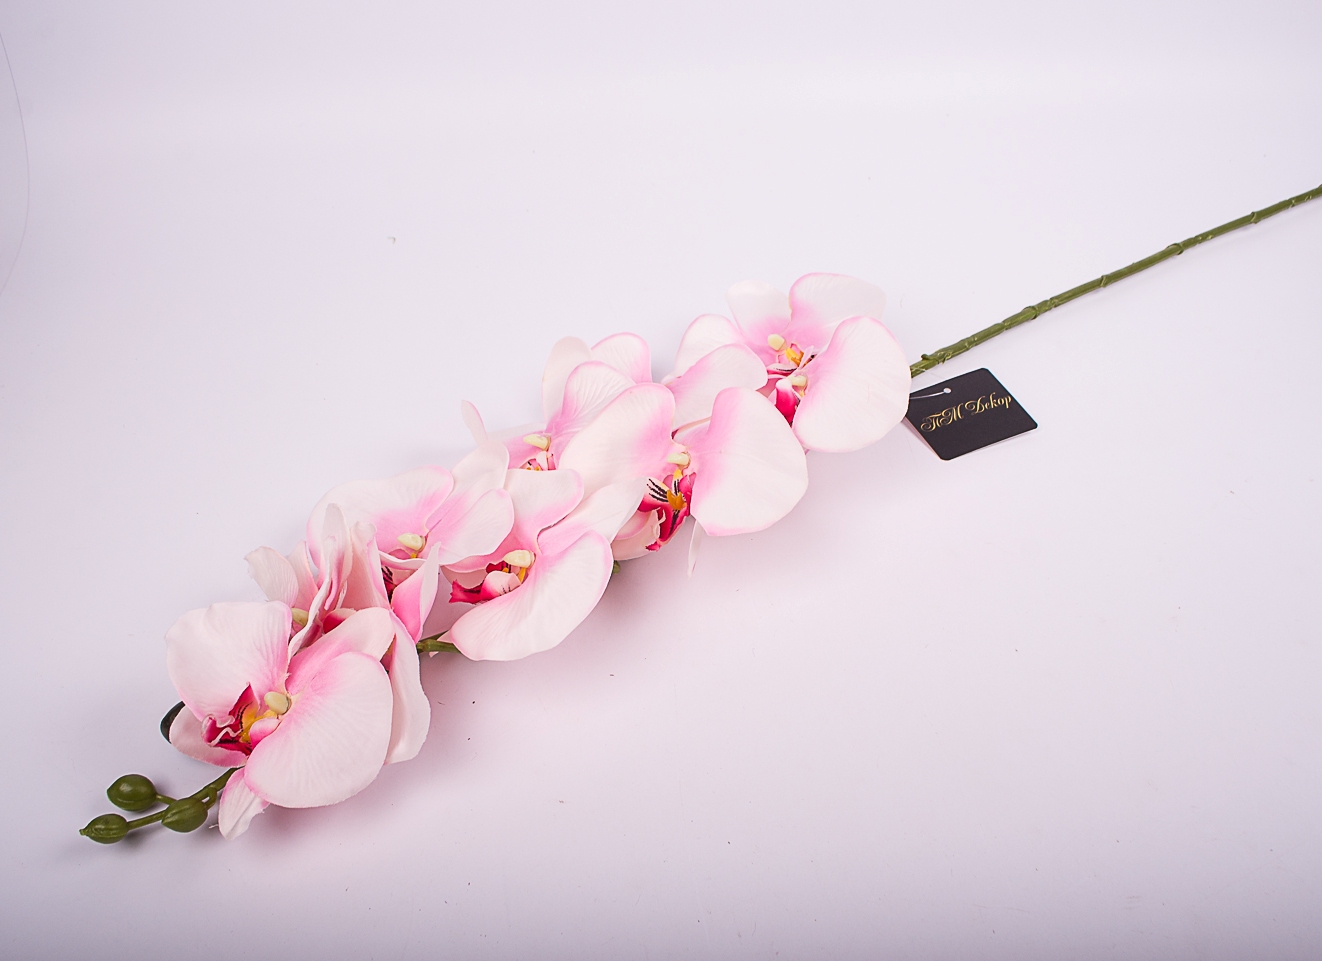 Интерьерные цветы Орхидея бело-розовая 100см